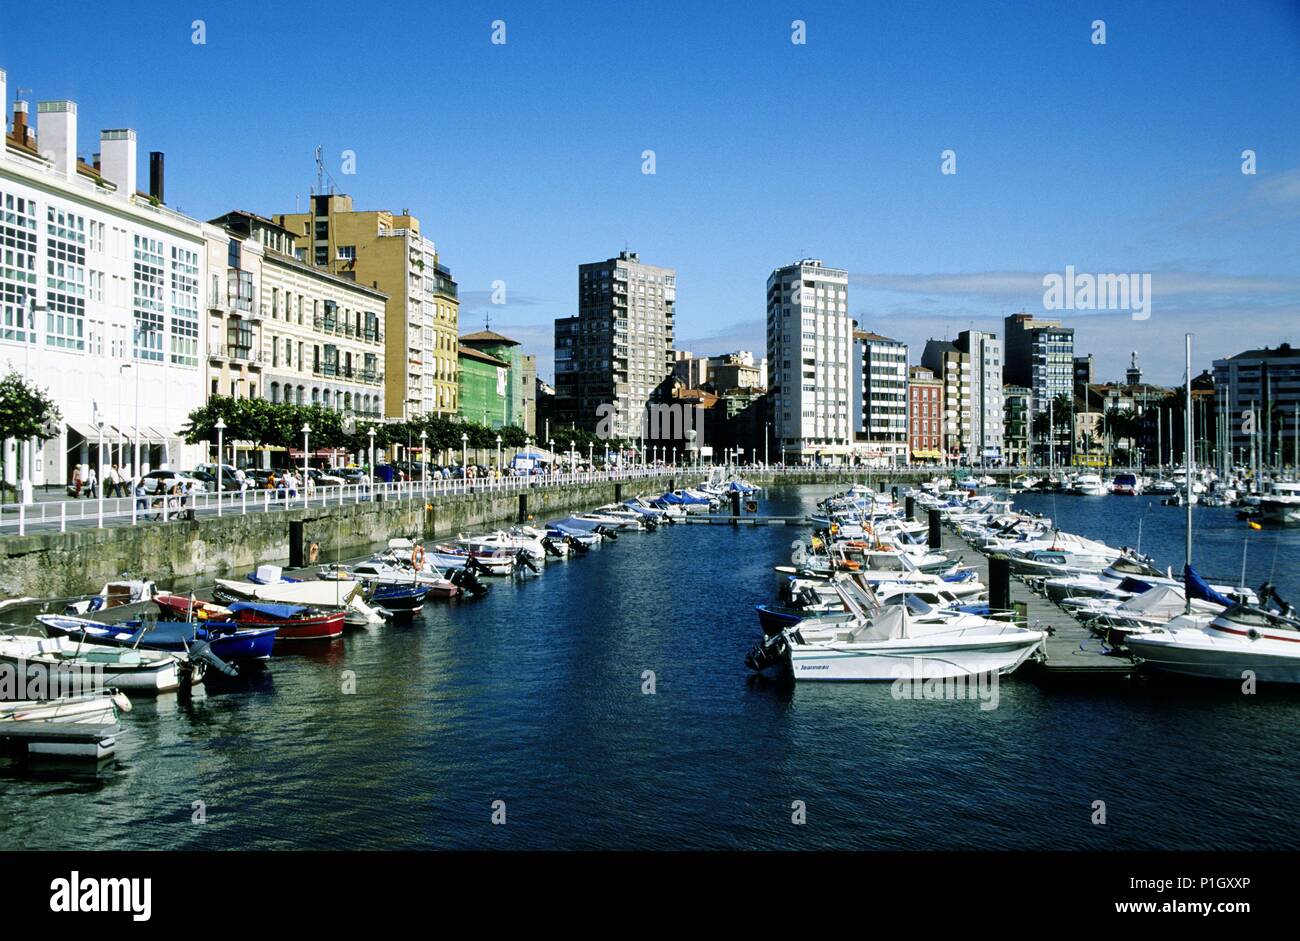 Gijón; puerto deportivo y fachada litoral Stock Photo - Alamy